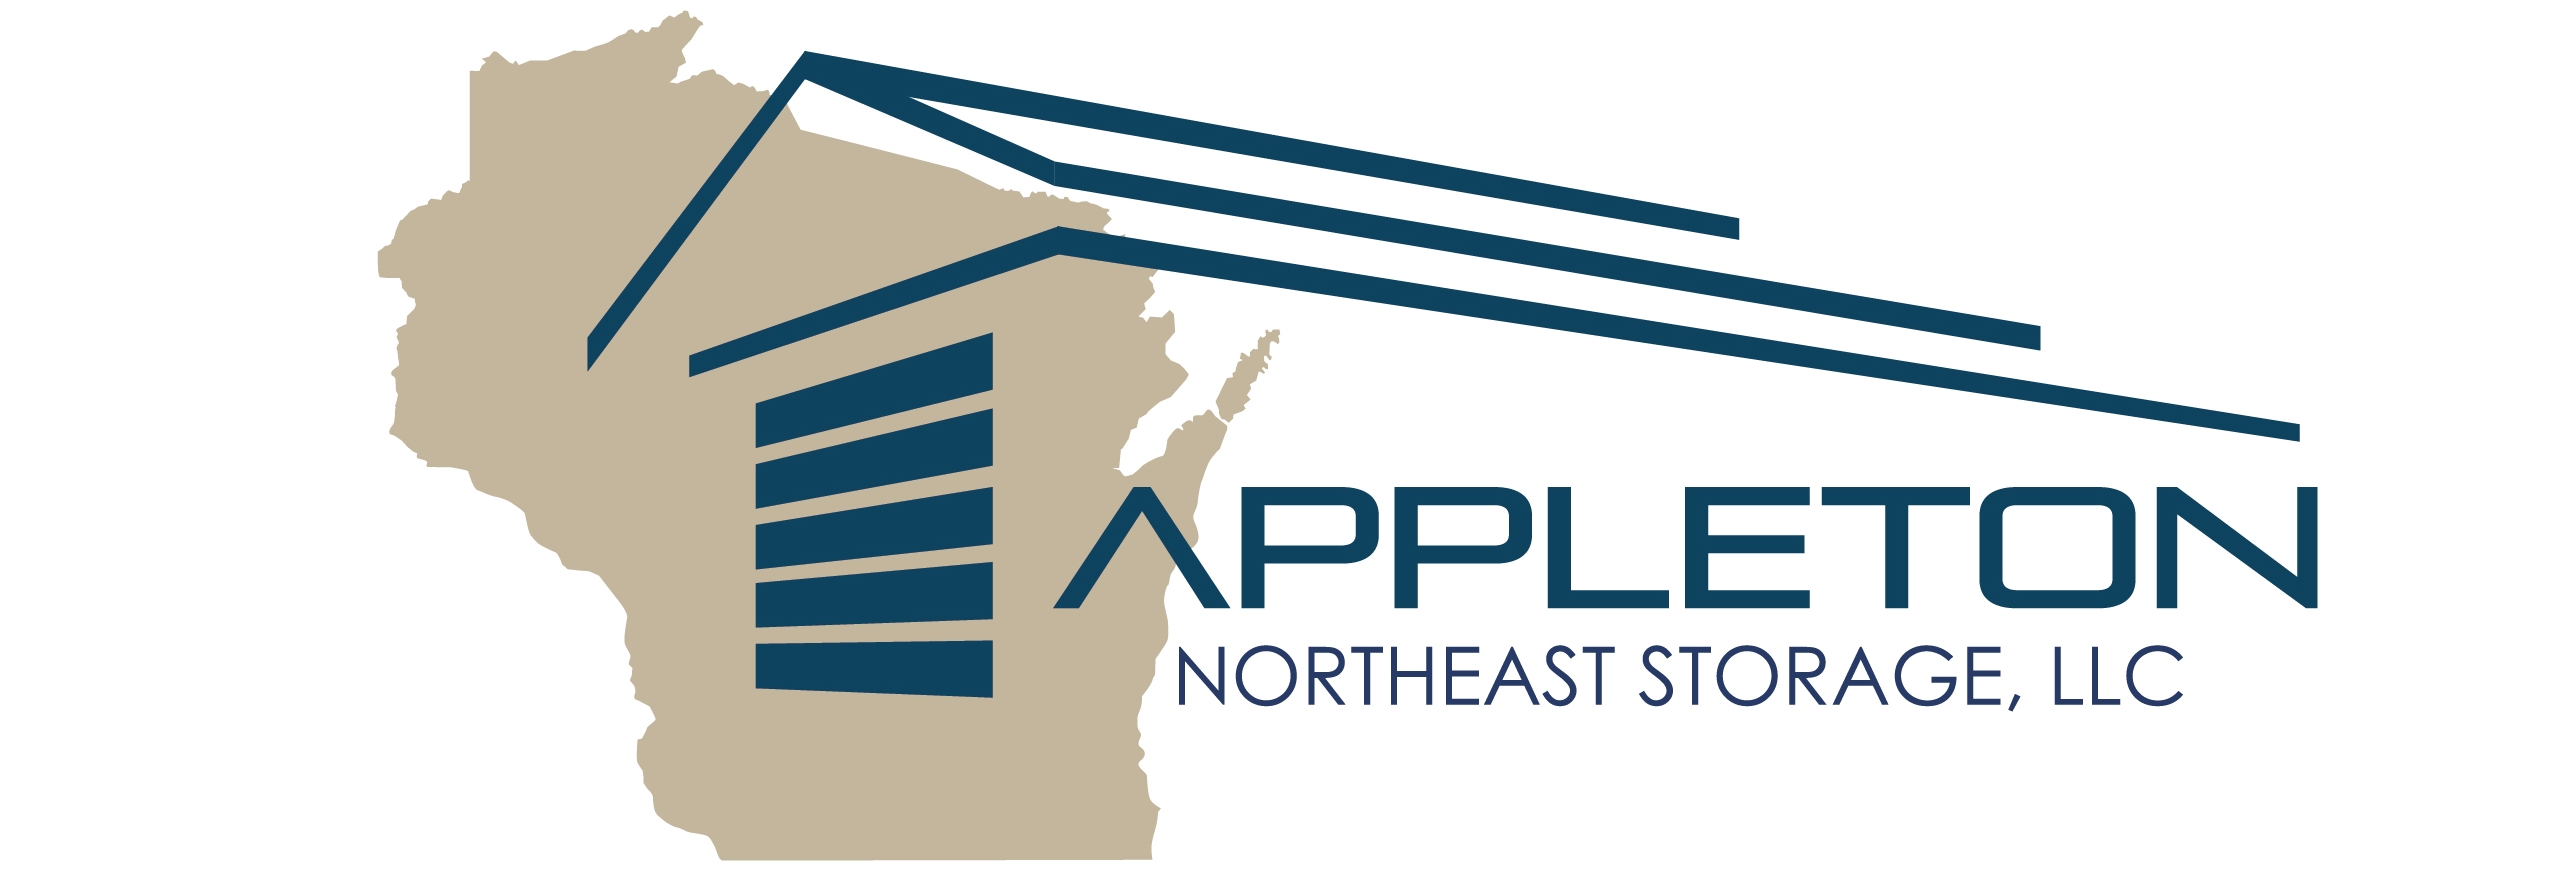 Appleton Northeast Storage in Appleton, WI